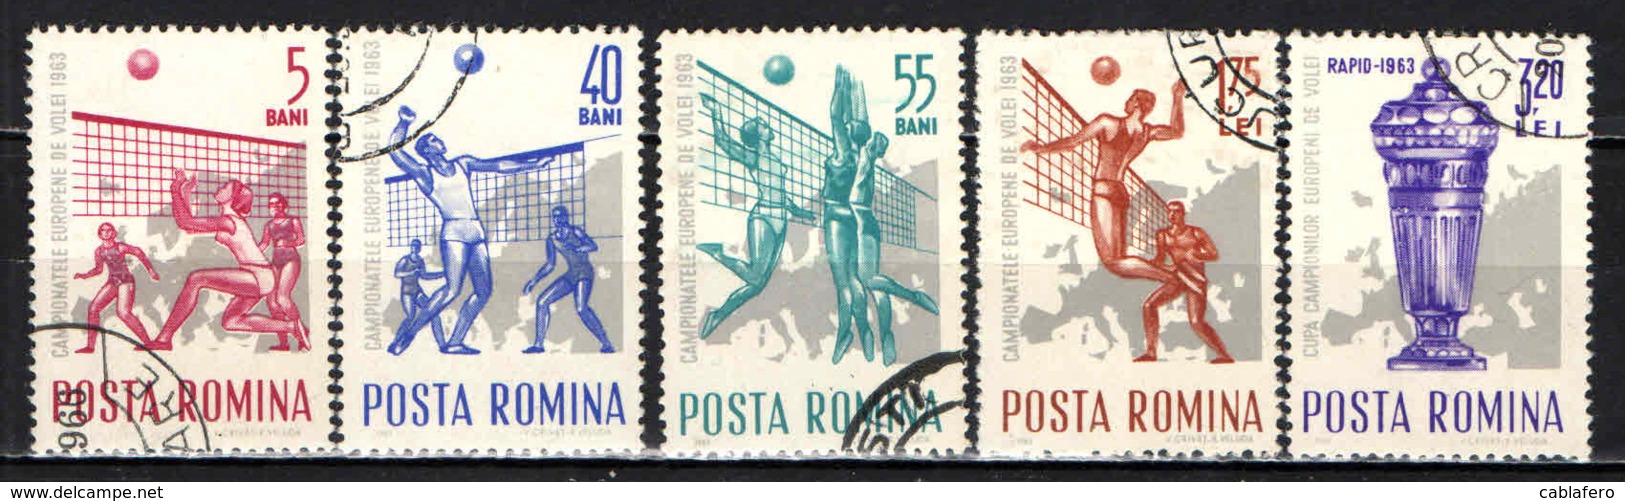 ROMANIA - 1963 - CAMPIONATO EUROPEO DI PALLAVOLO - USATI - Usati